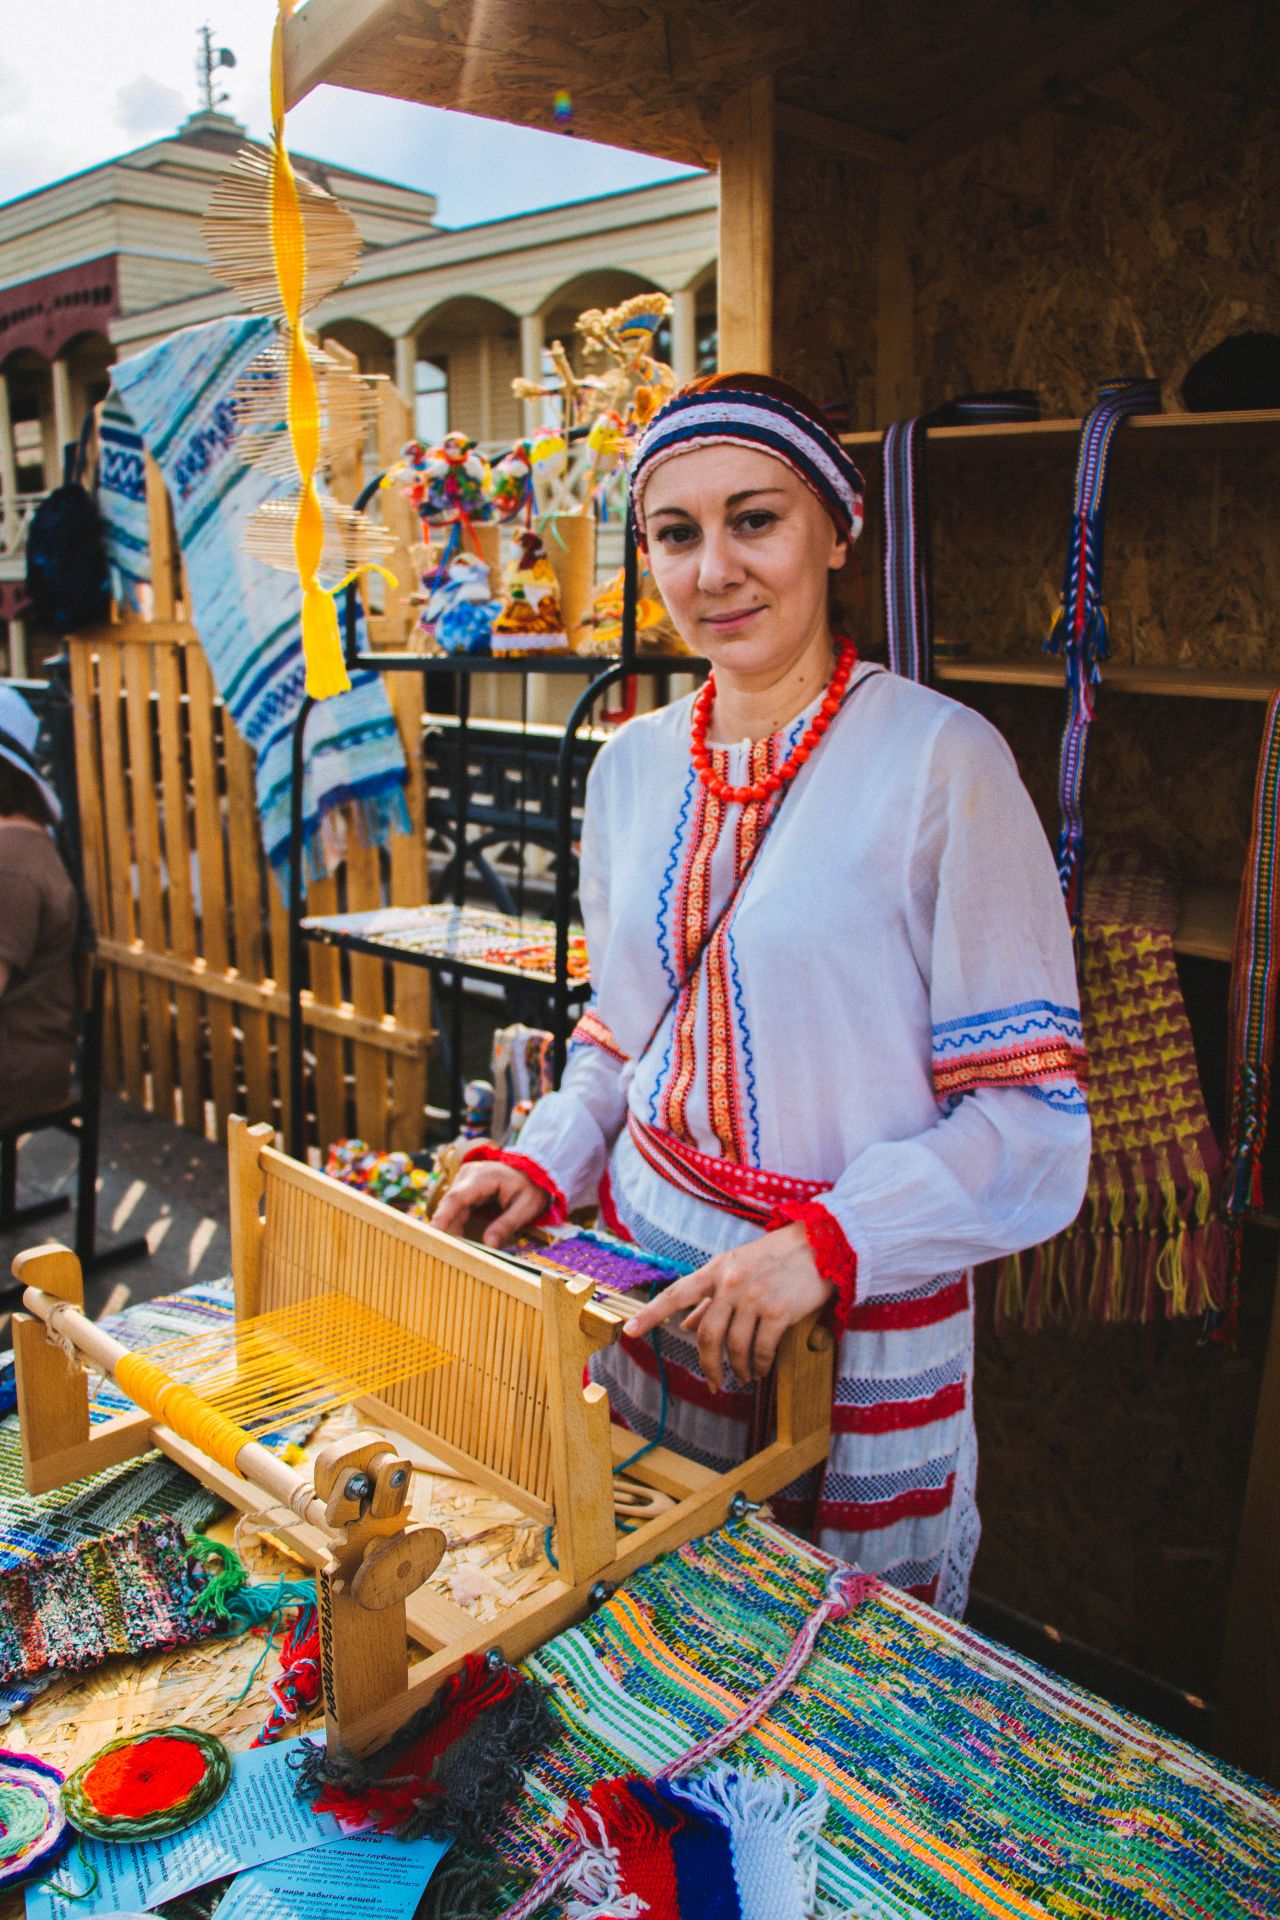 Областной центр народной культуры примет участие в праздновании 460-летия Астрахани